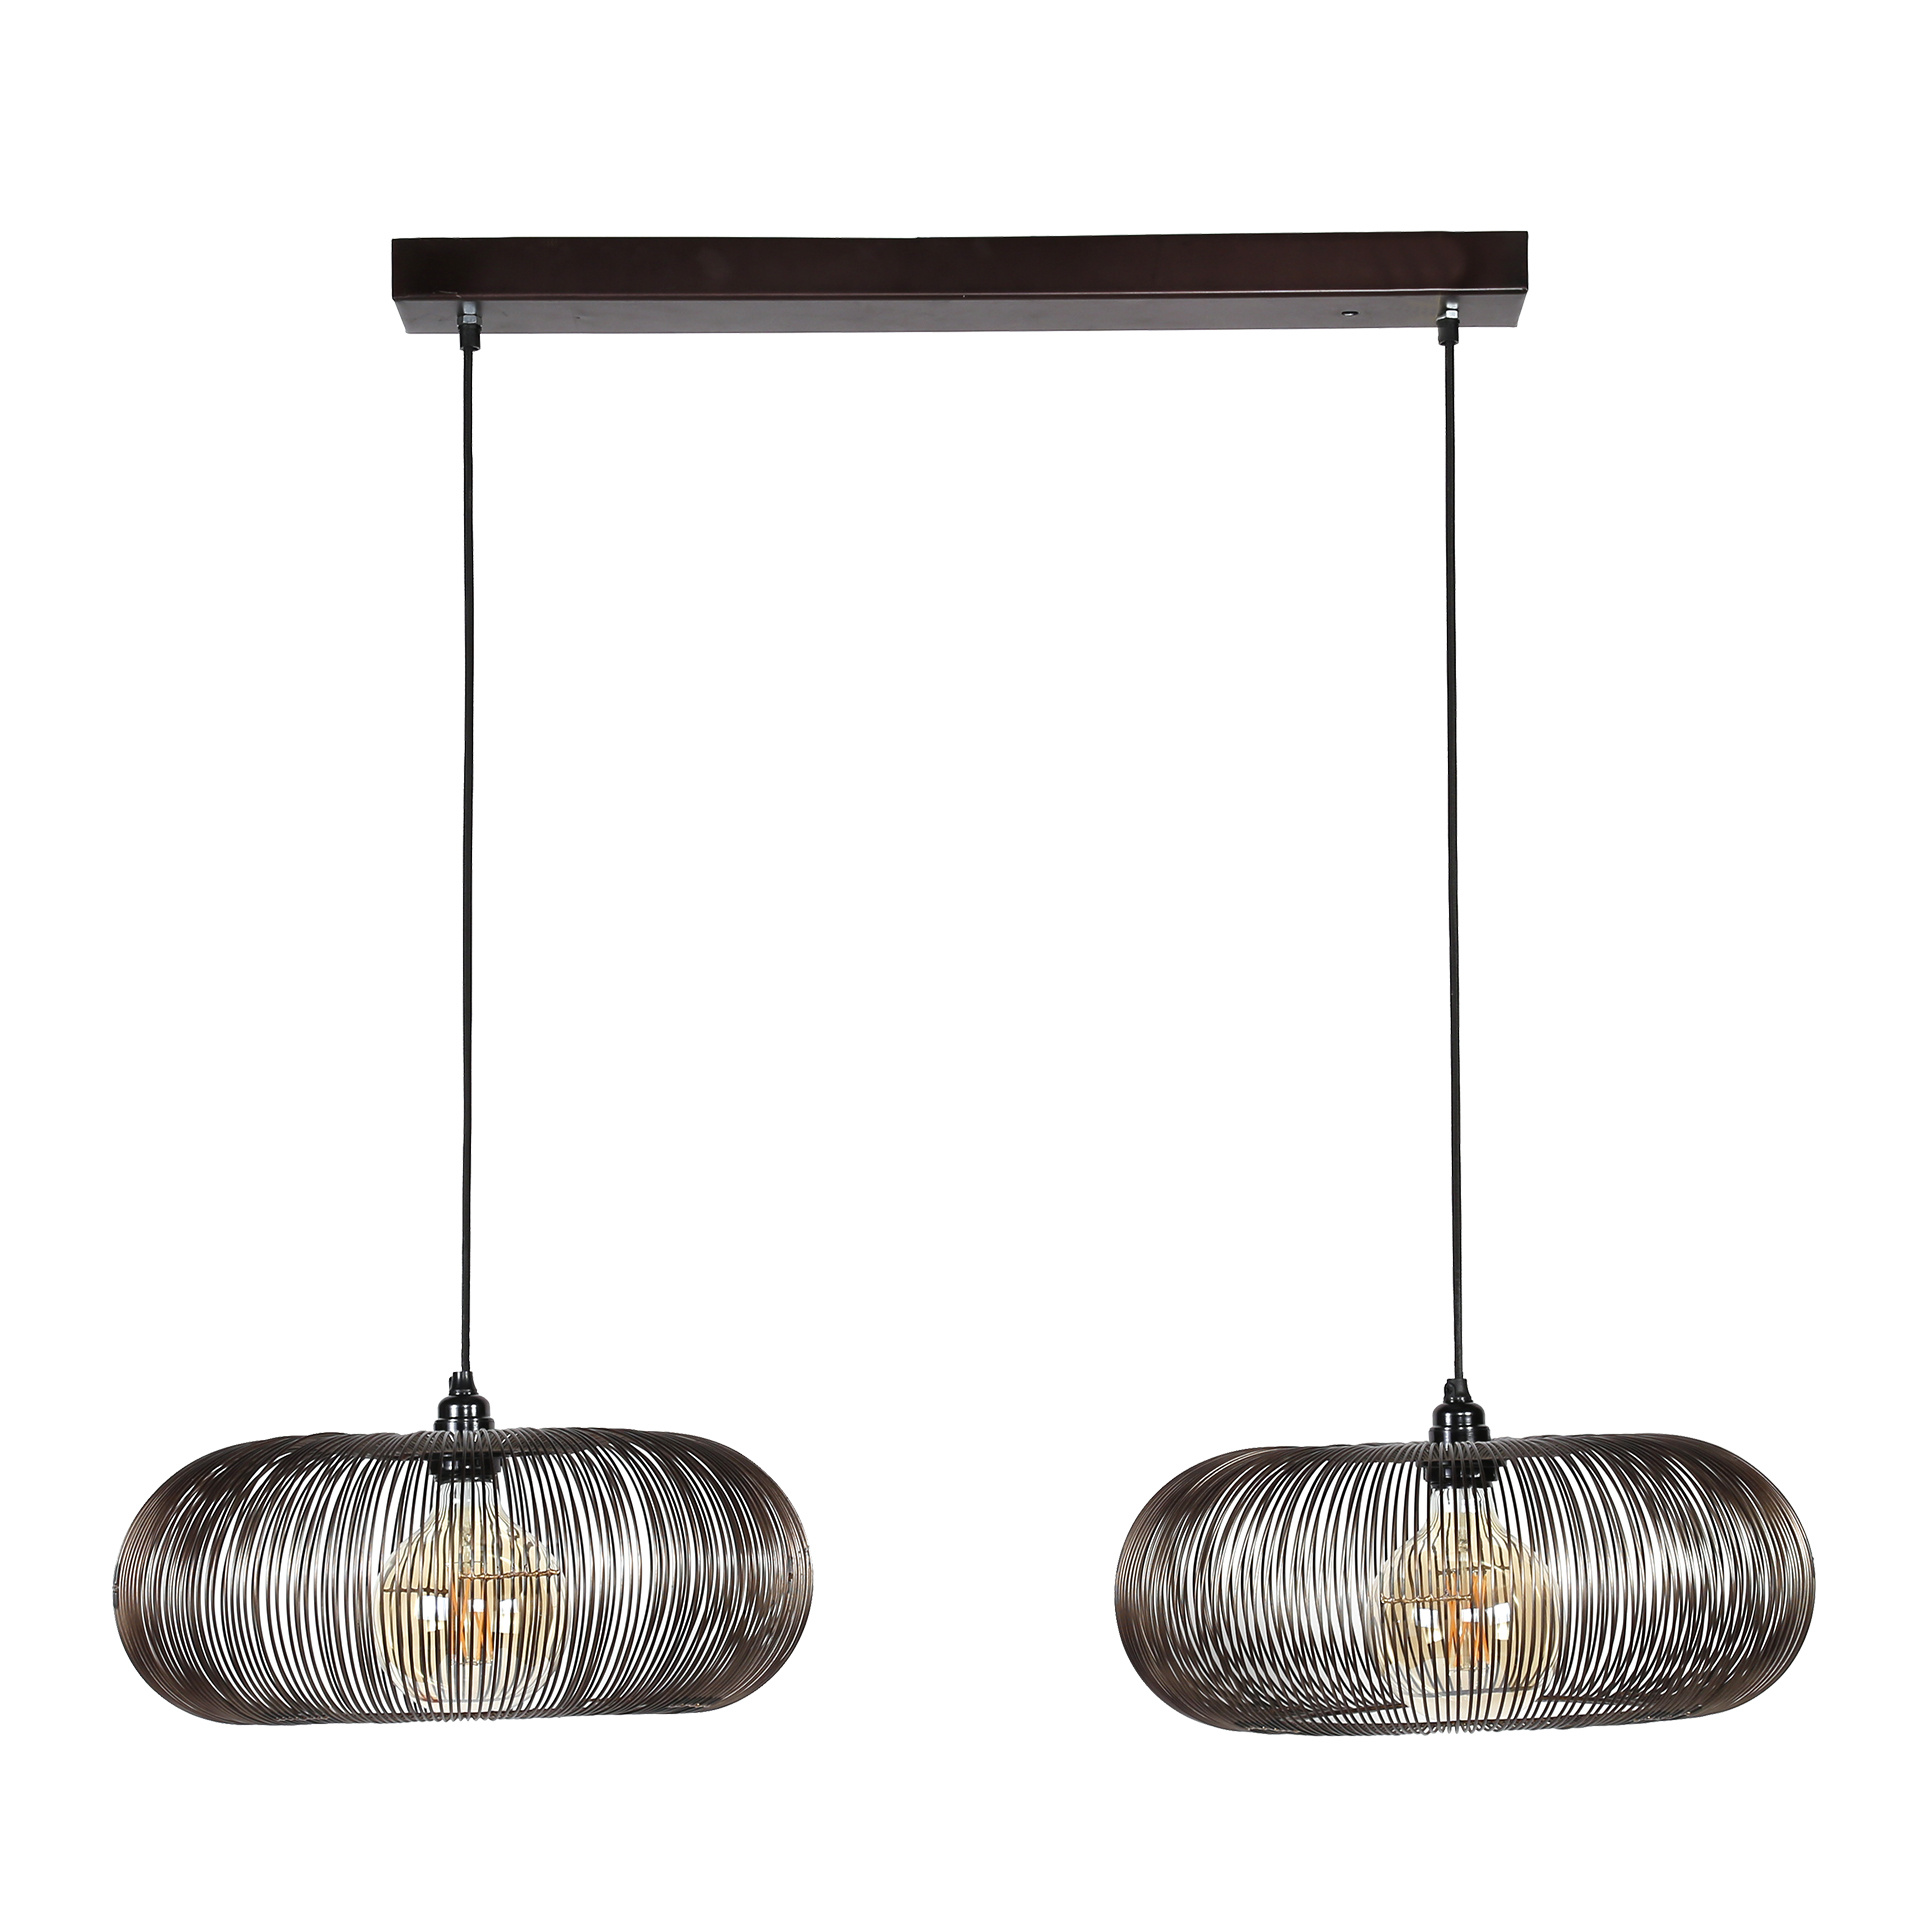 Hoyz - Hanglamp met 2 lampen - Koper kleurig - 150cm in hoogte verstelbaar  - Disk vorm Ø43 - Industriële Hanglamp voor woonkamer of eetkamer 